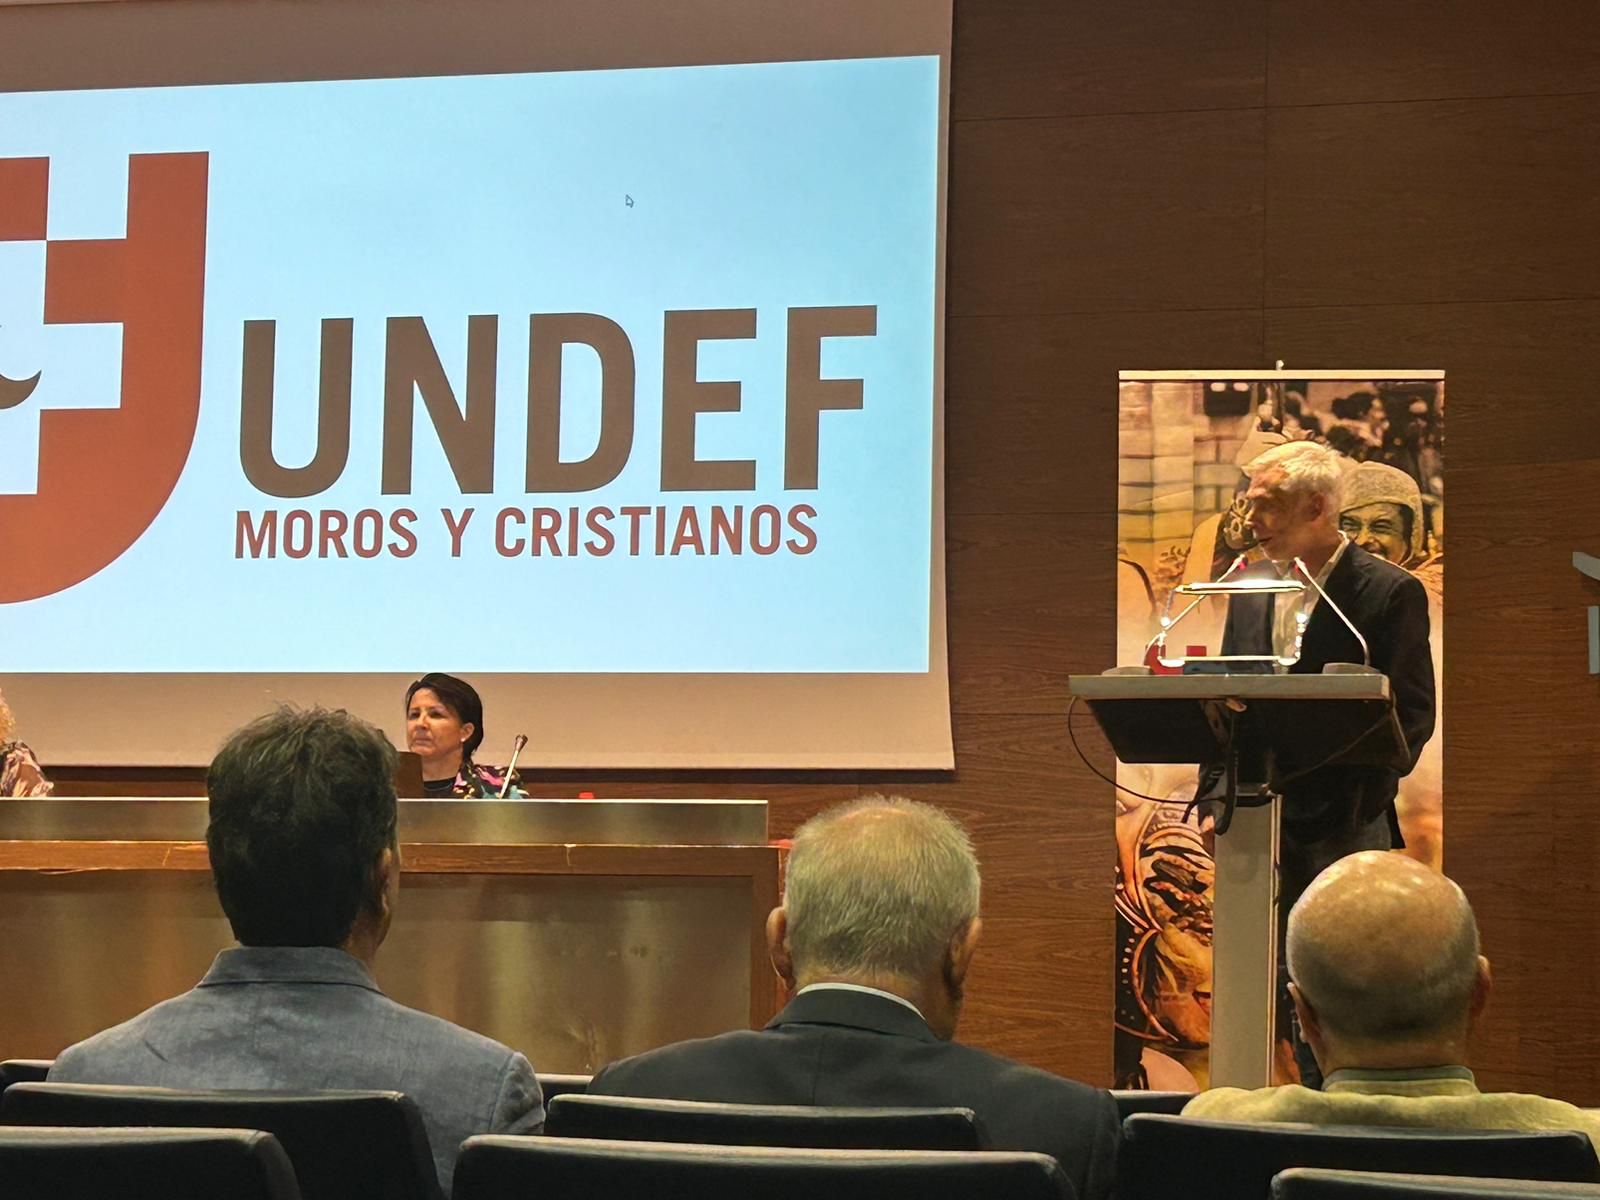 Miguel Ángel Fullana es el nuevo miembro de la Junta de Gobierno de la Undef